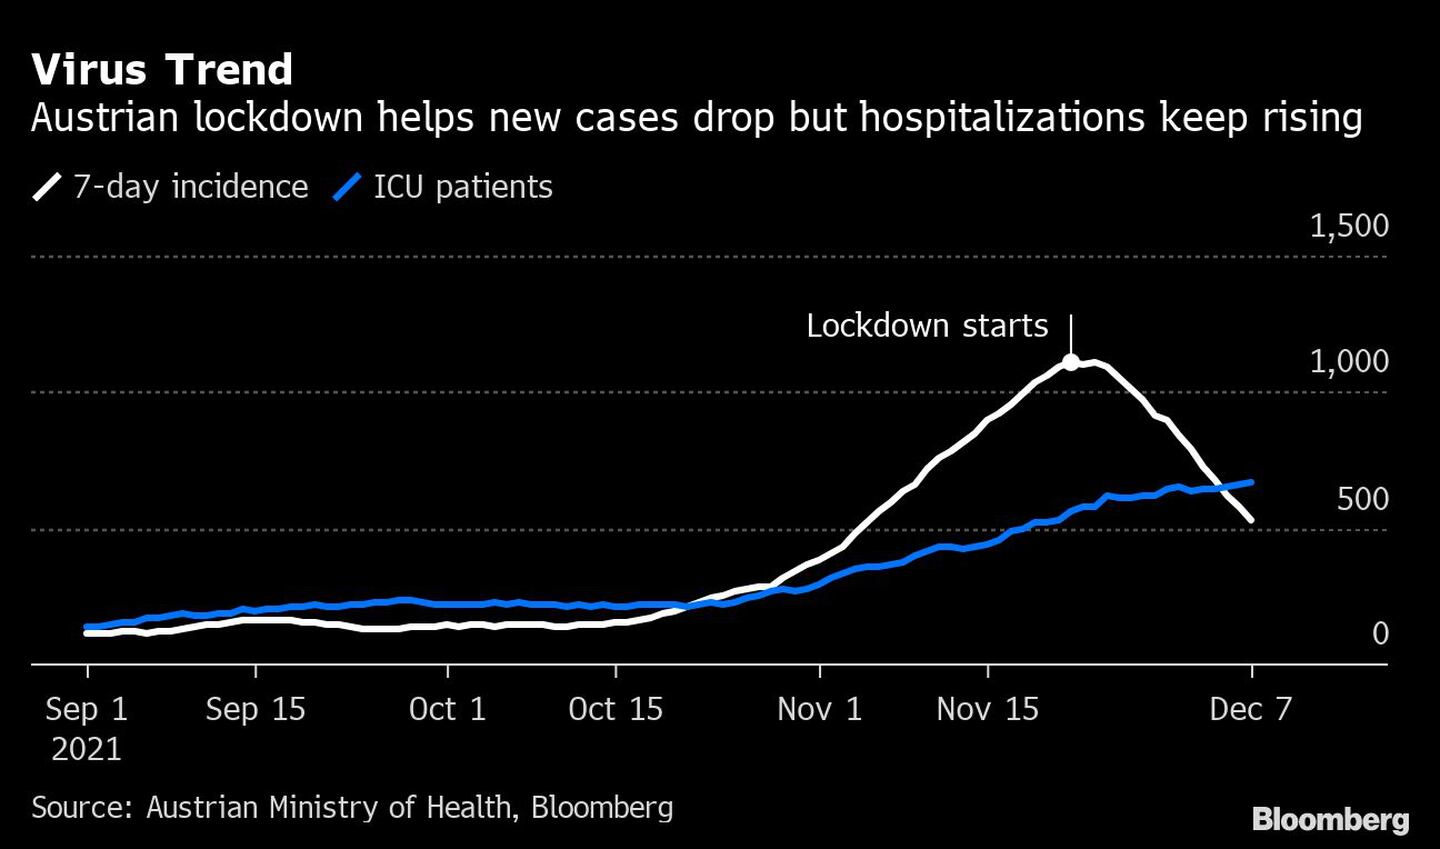 Confinamiento de Austria ayuda a reducir nuevos casos pero hospitalizaciones siguen subiendo.dfd